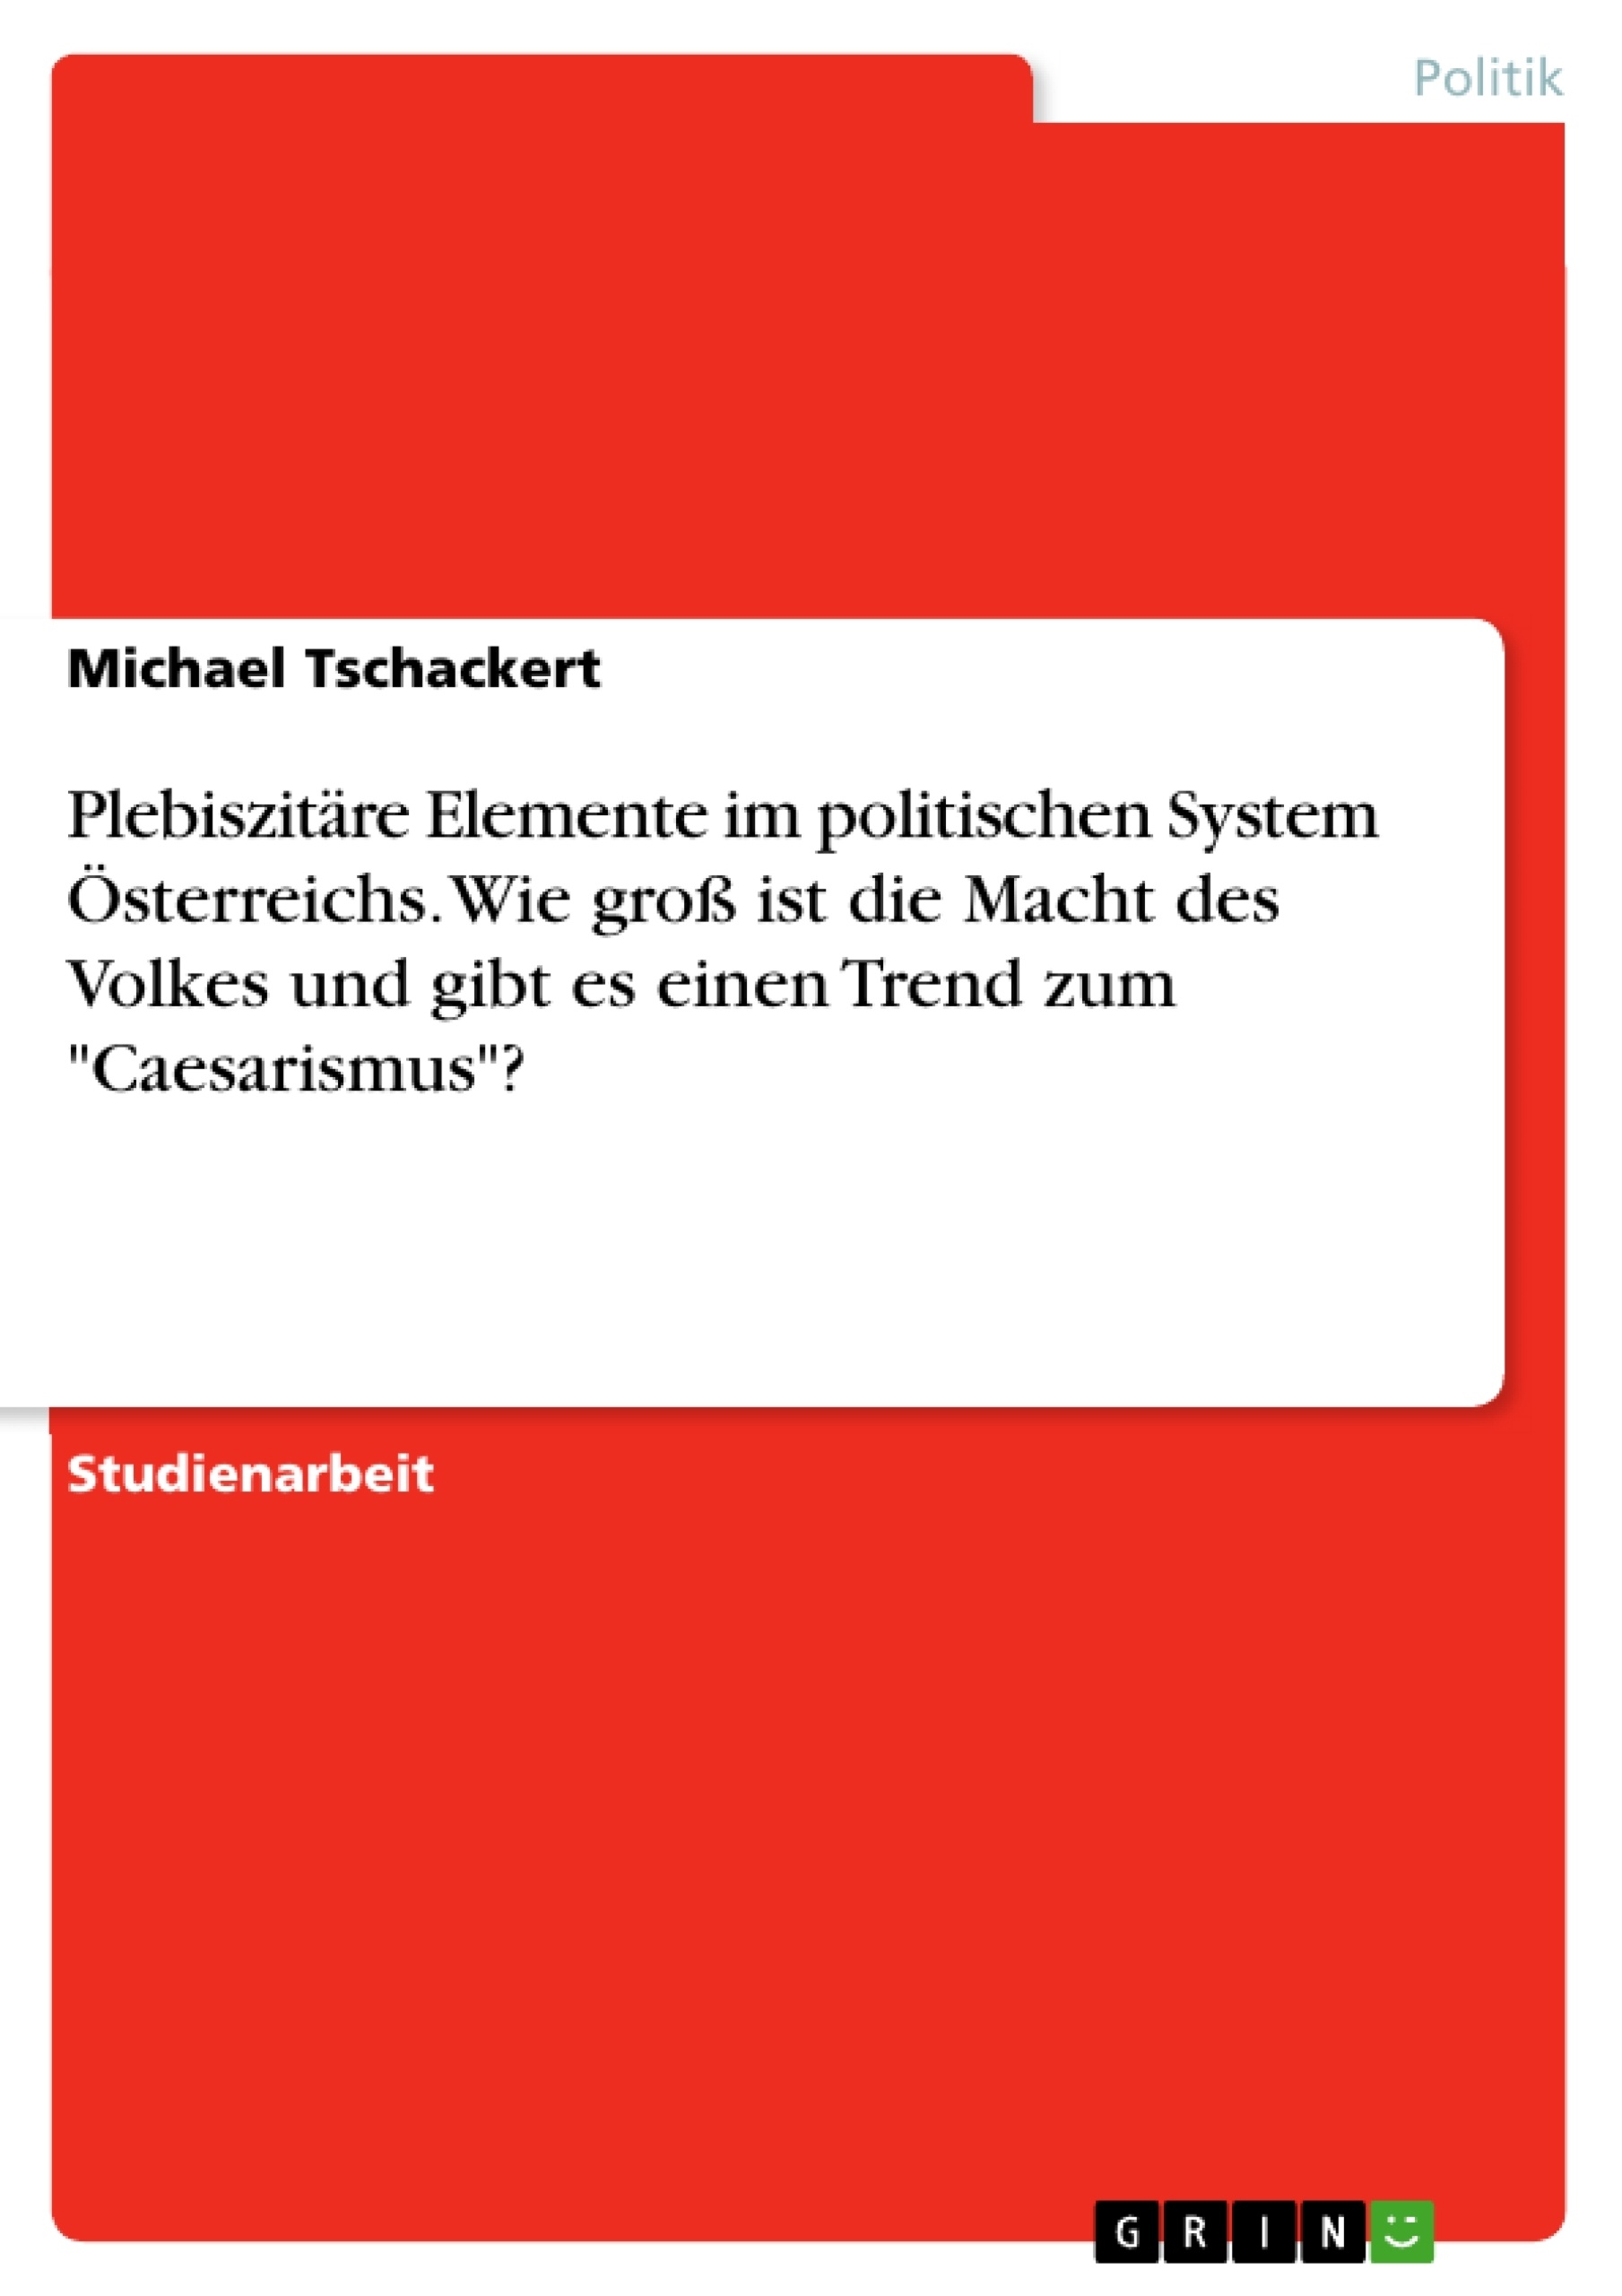 Título: Plebiszitäre Elemente im politischen System Österreichs. Wie groß ist die Macht des Volkes und gibt es einen Trend zum "Caesarismus"?